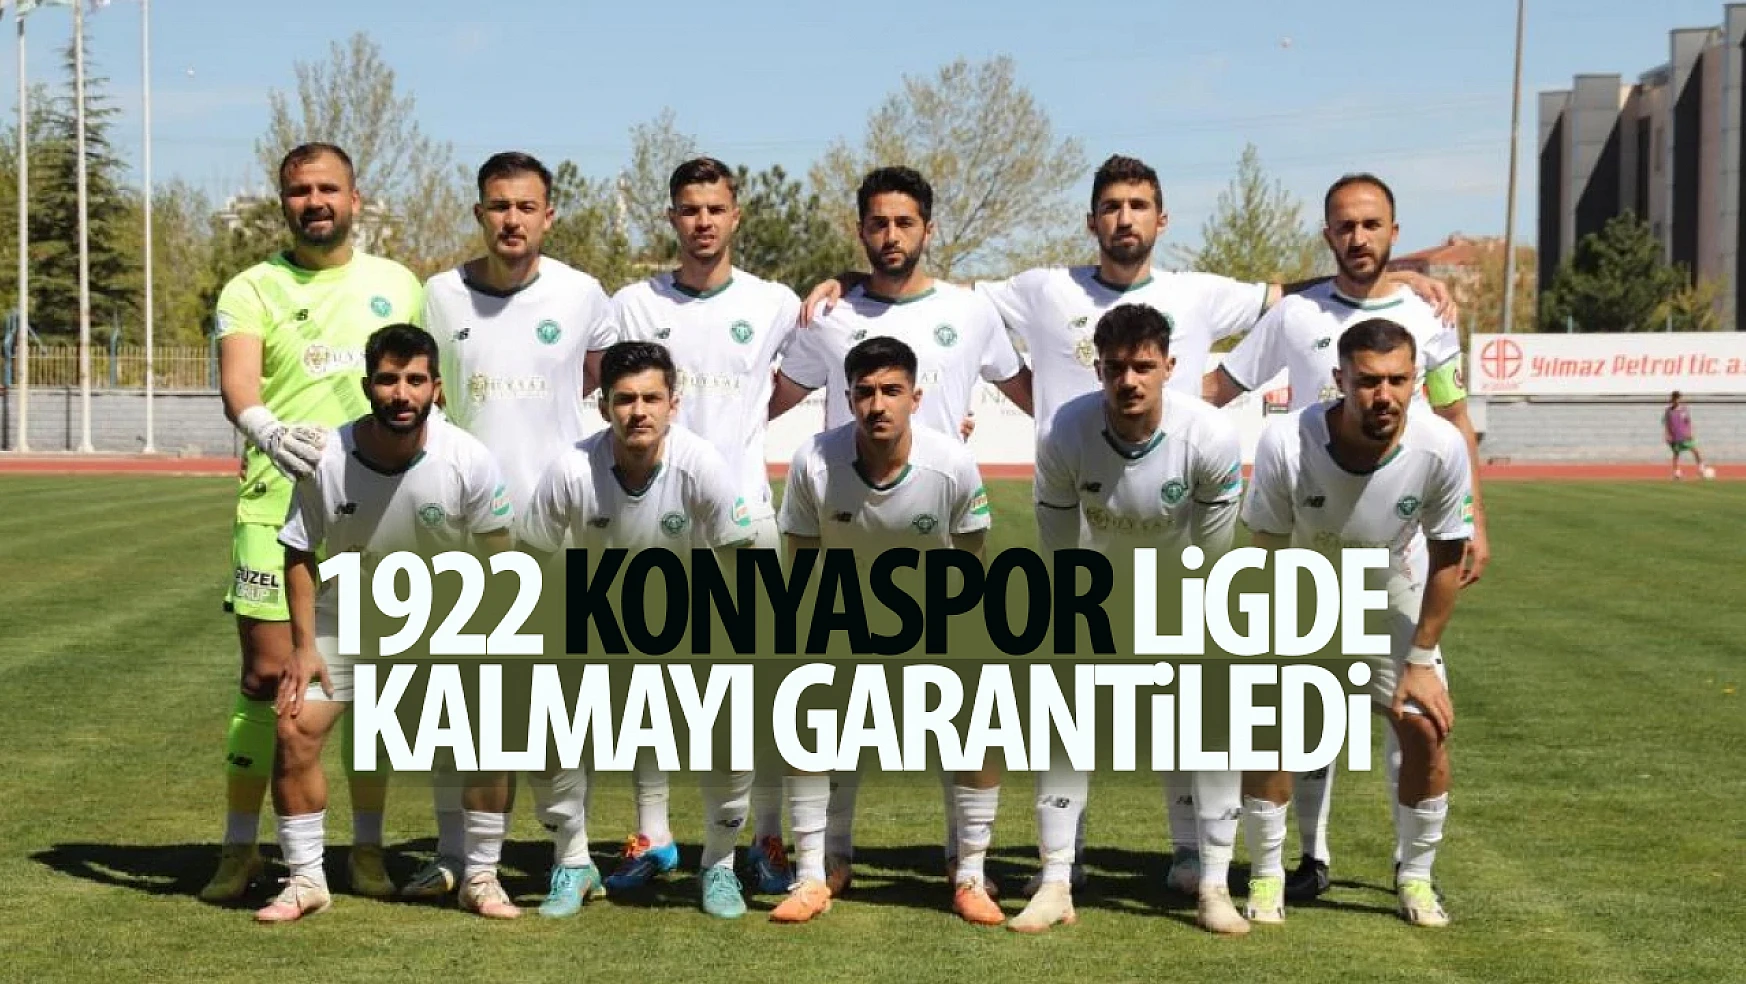 1922 Konyaspor ligde kalmayı garantiledi!